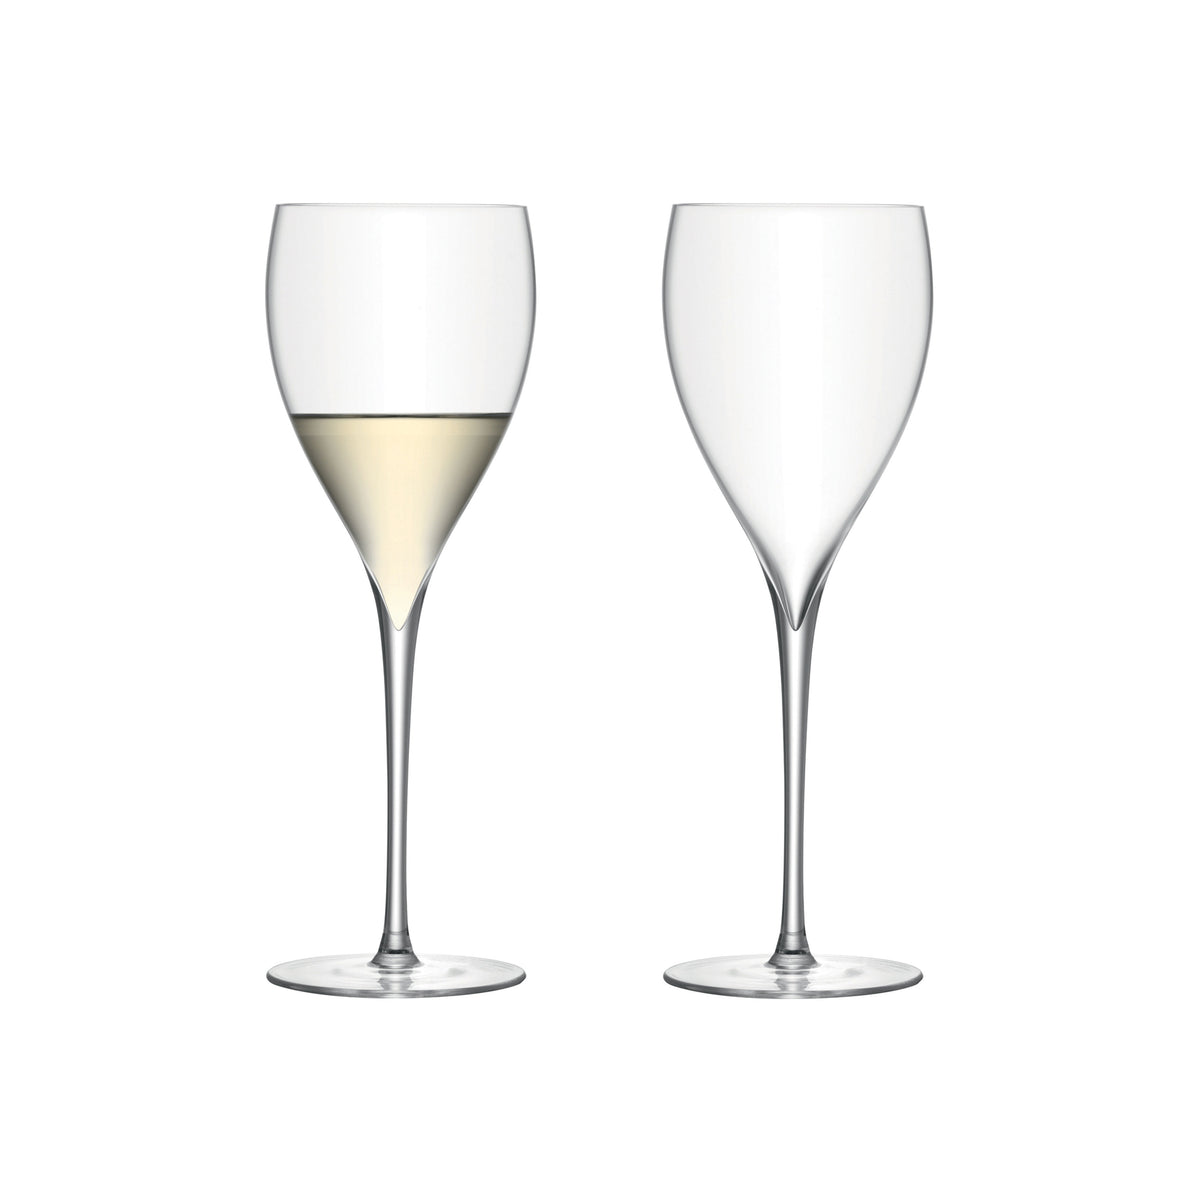 Savoy White Wine Glasses 12oz, Set of 2 (D)